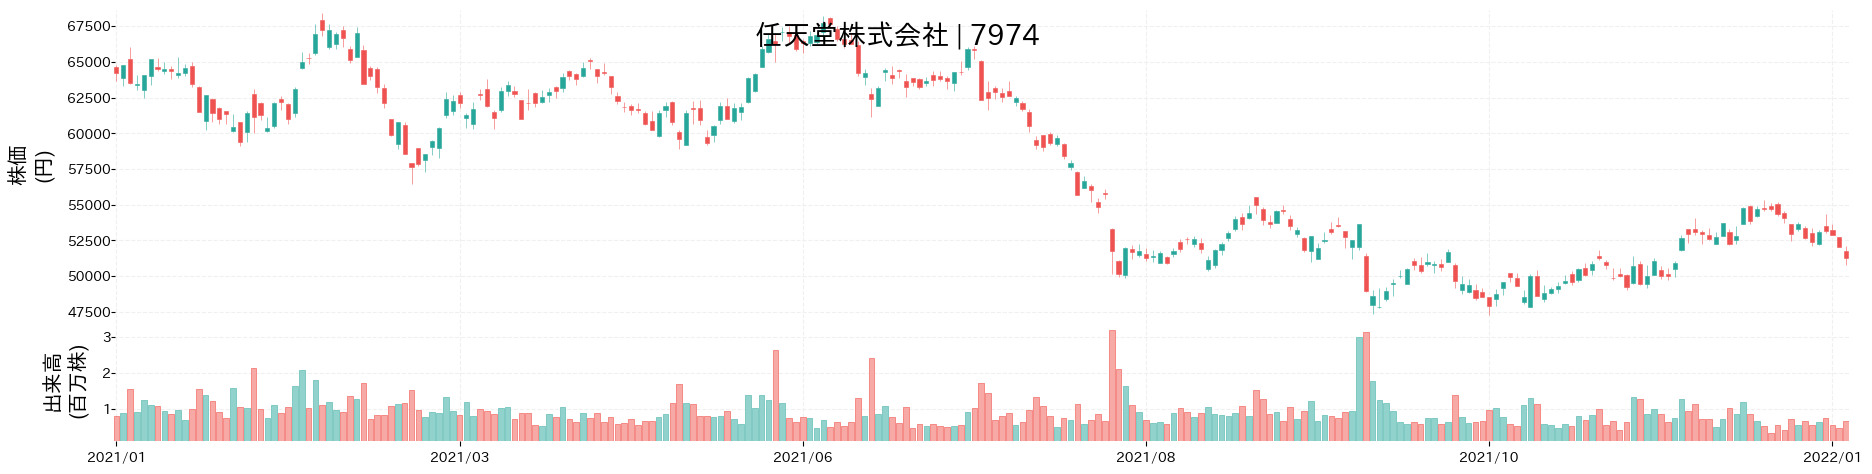 任天堂の株価推移(2021)